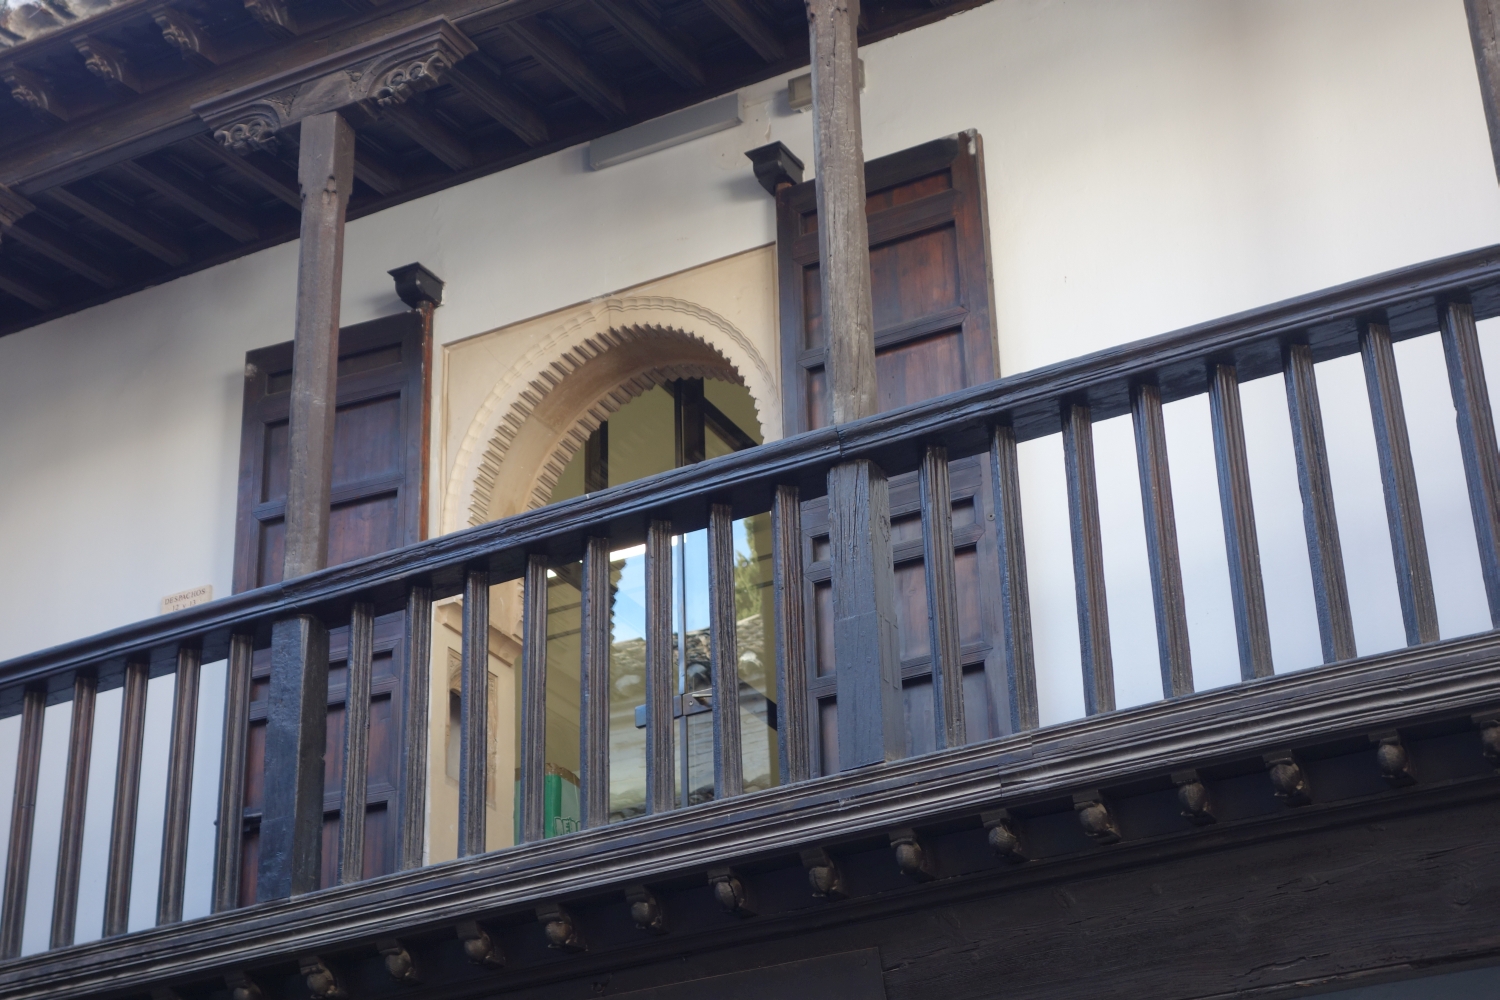 Casa de Lorenzo el Chapiz, detail of window on upper level gallery in courtyard